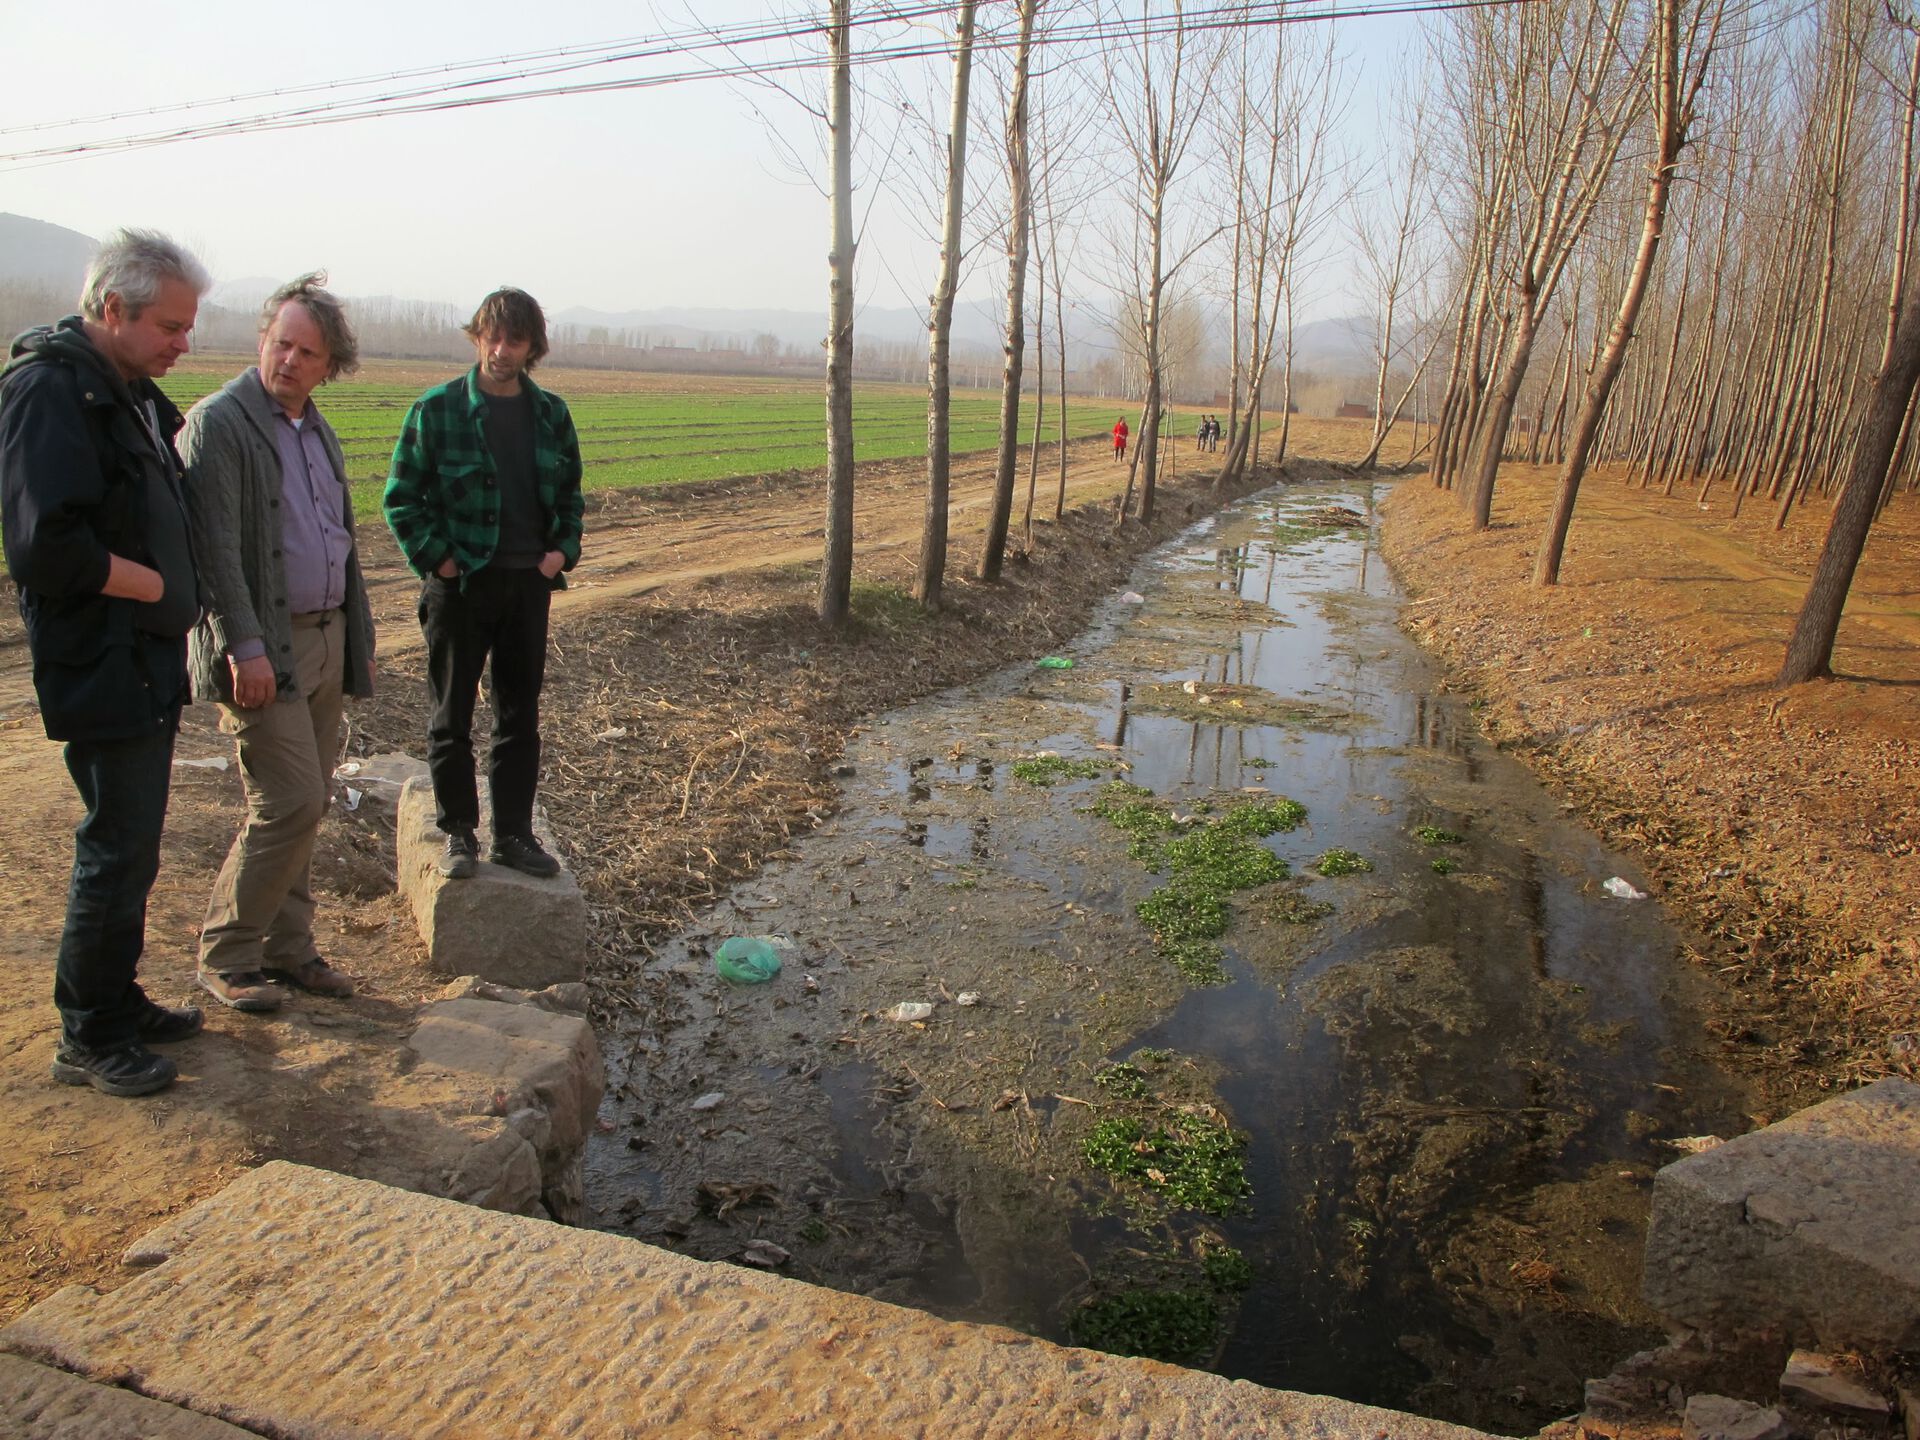 Professor Rolf David Vogt med kolleger studerer en forurenset bekk i et kinesisk jordbruksområde.